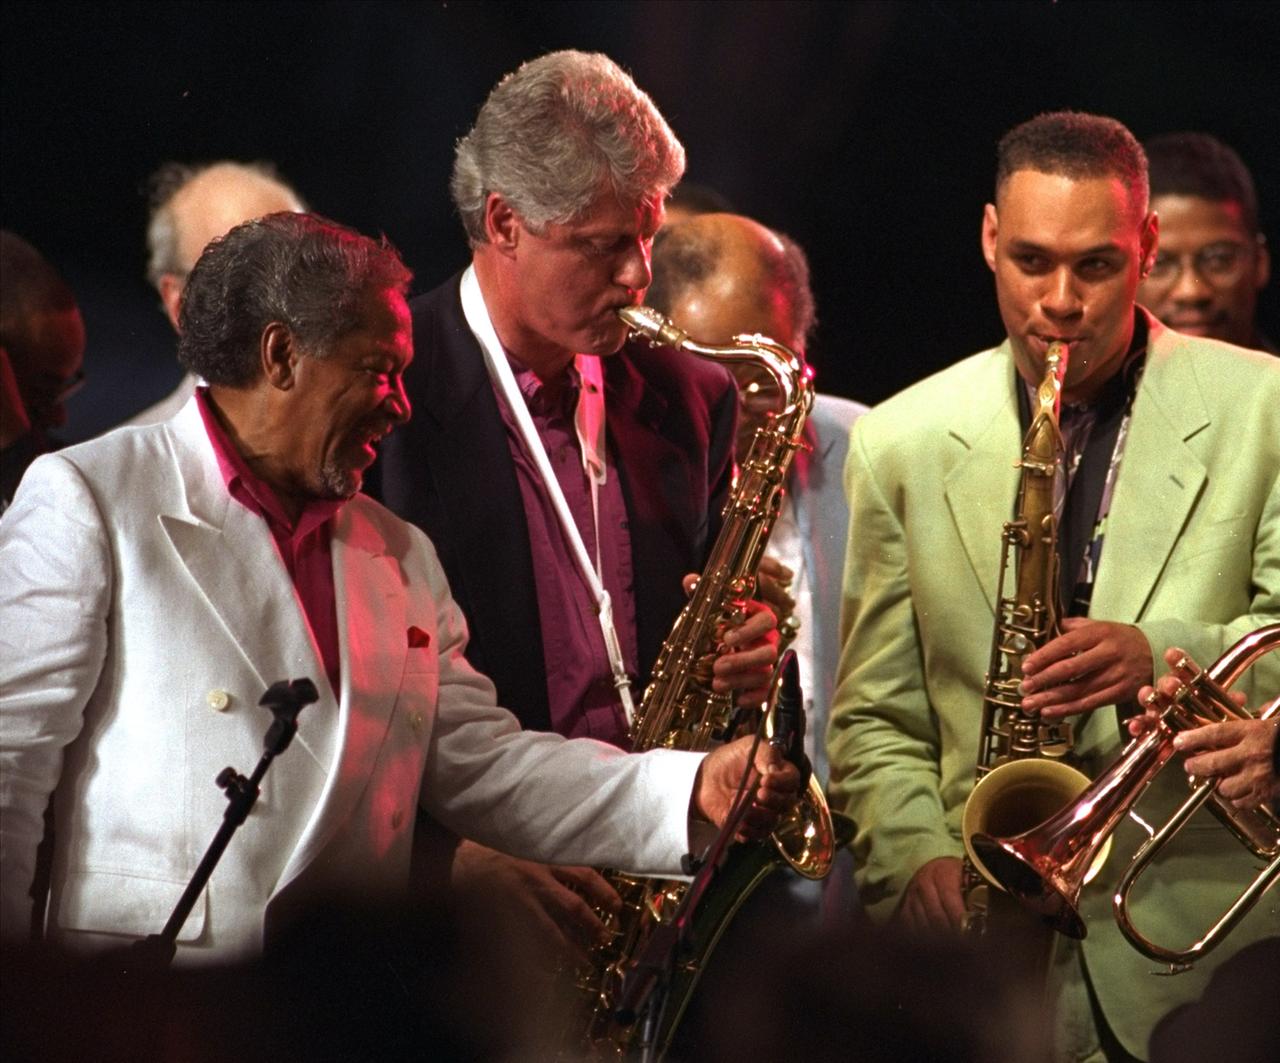 Der Jazzsaxofonist Illinois Jacquet (l.) bei einem Auftritt mit dem damaligen US-Präsidenten Bill Clinton (M.) und Joshua Redman am 18. Juni 1993 auf dem Newport Jazz Festival